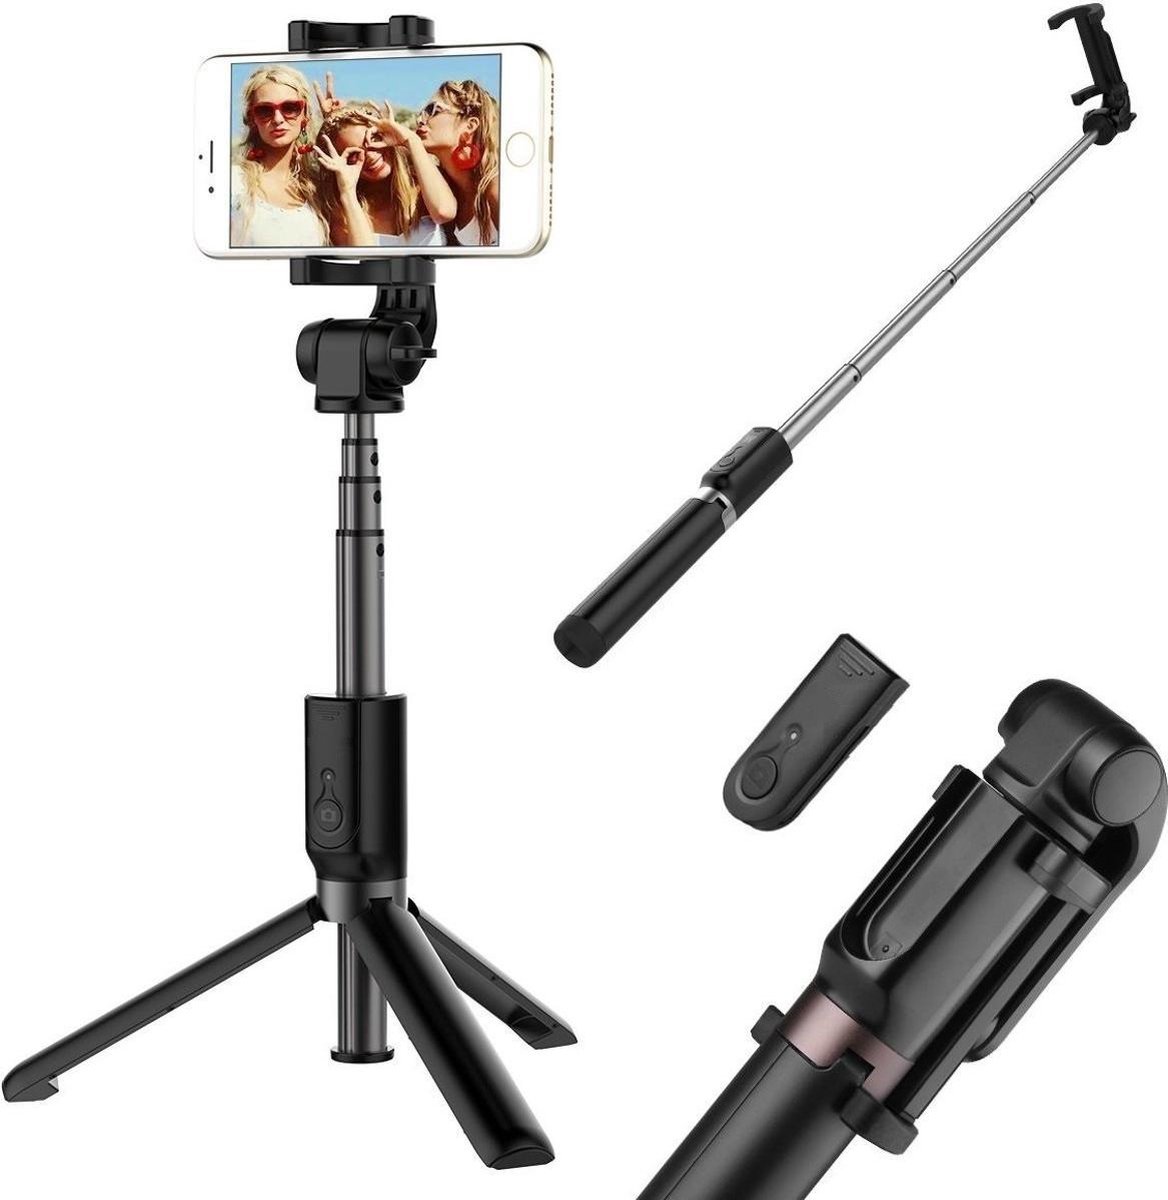 Ntech 3 in 1 Selfie Stick met Afstandsbediening en Foldable Tripod Stand Geschikt voor Samsung Galaxy S10/S10+/S10e A50/A70/A70s/A40/A30/A7(2018) - Zwart